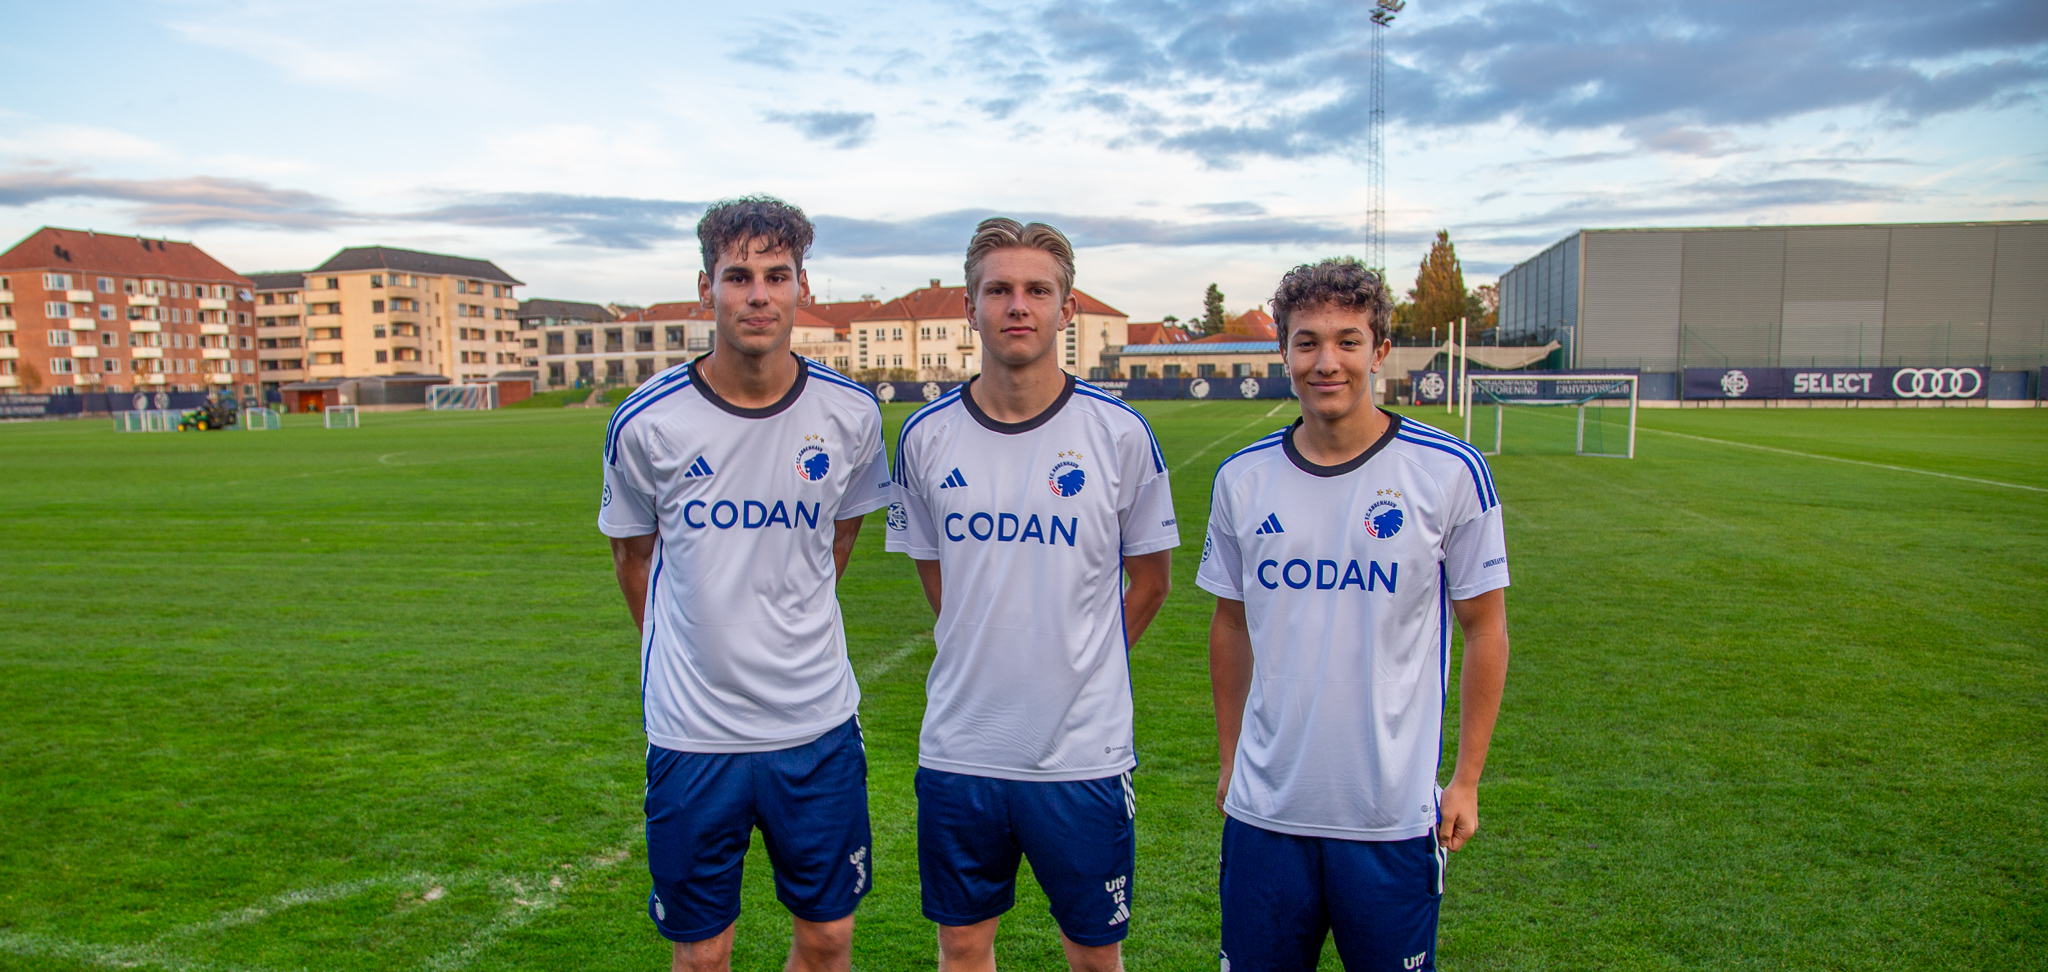 U19-holdet får Codan på maven i fremtiden